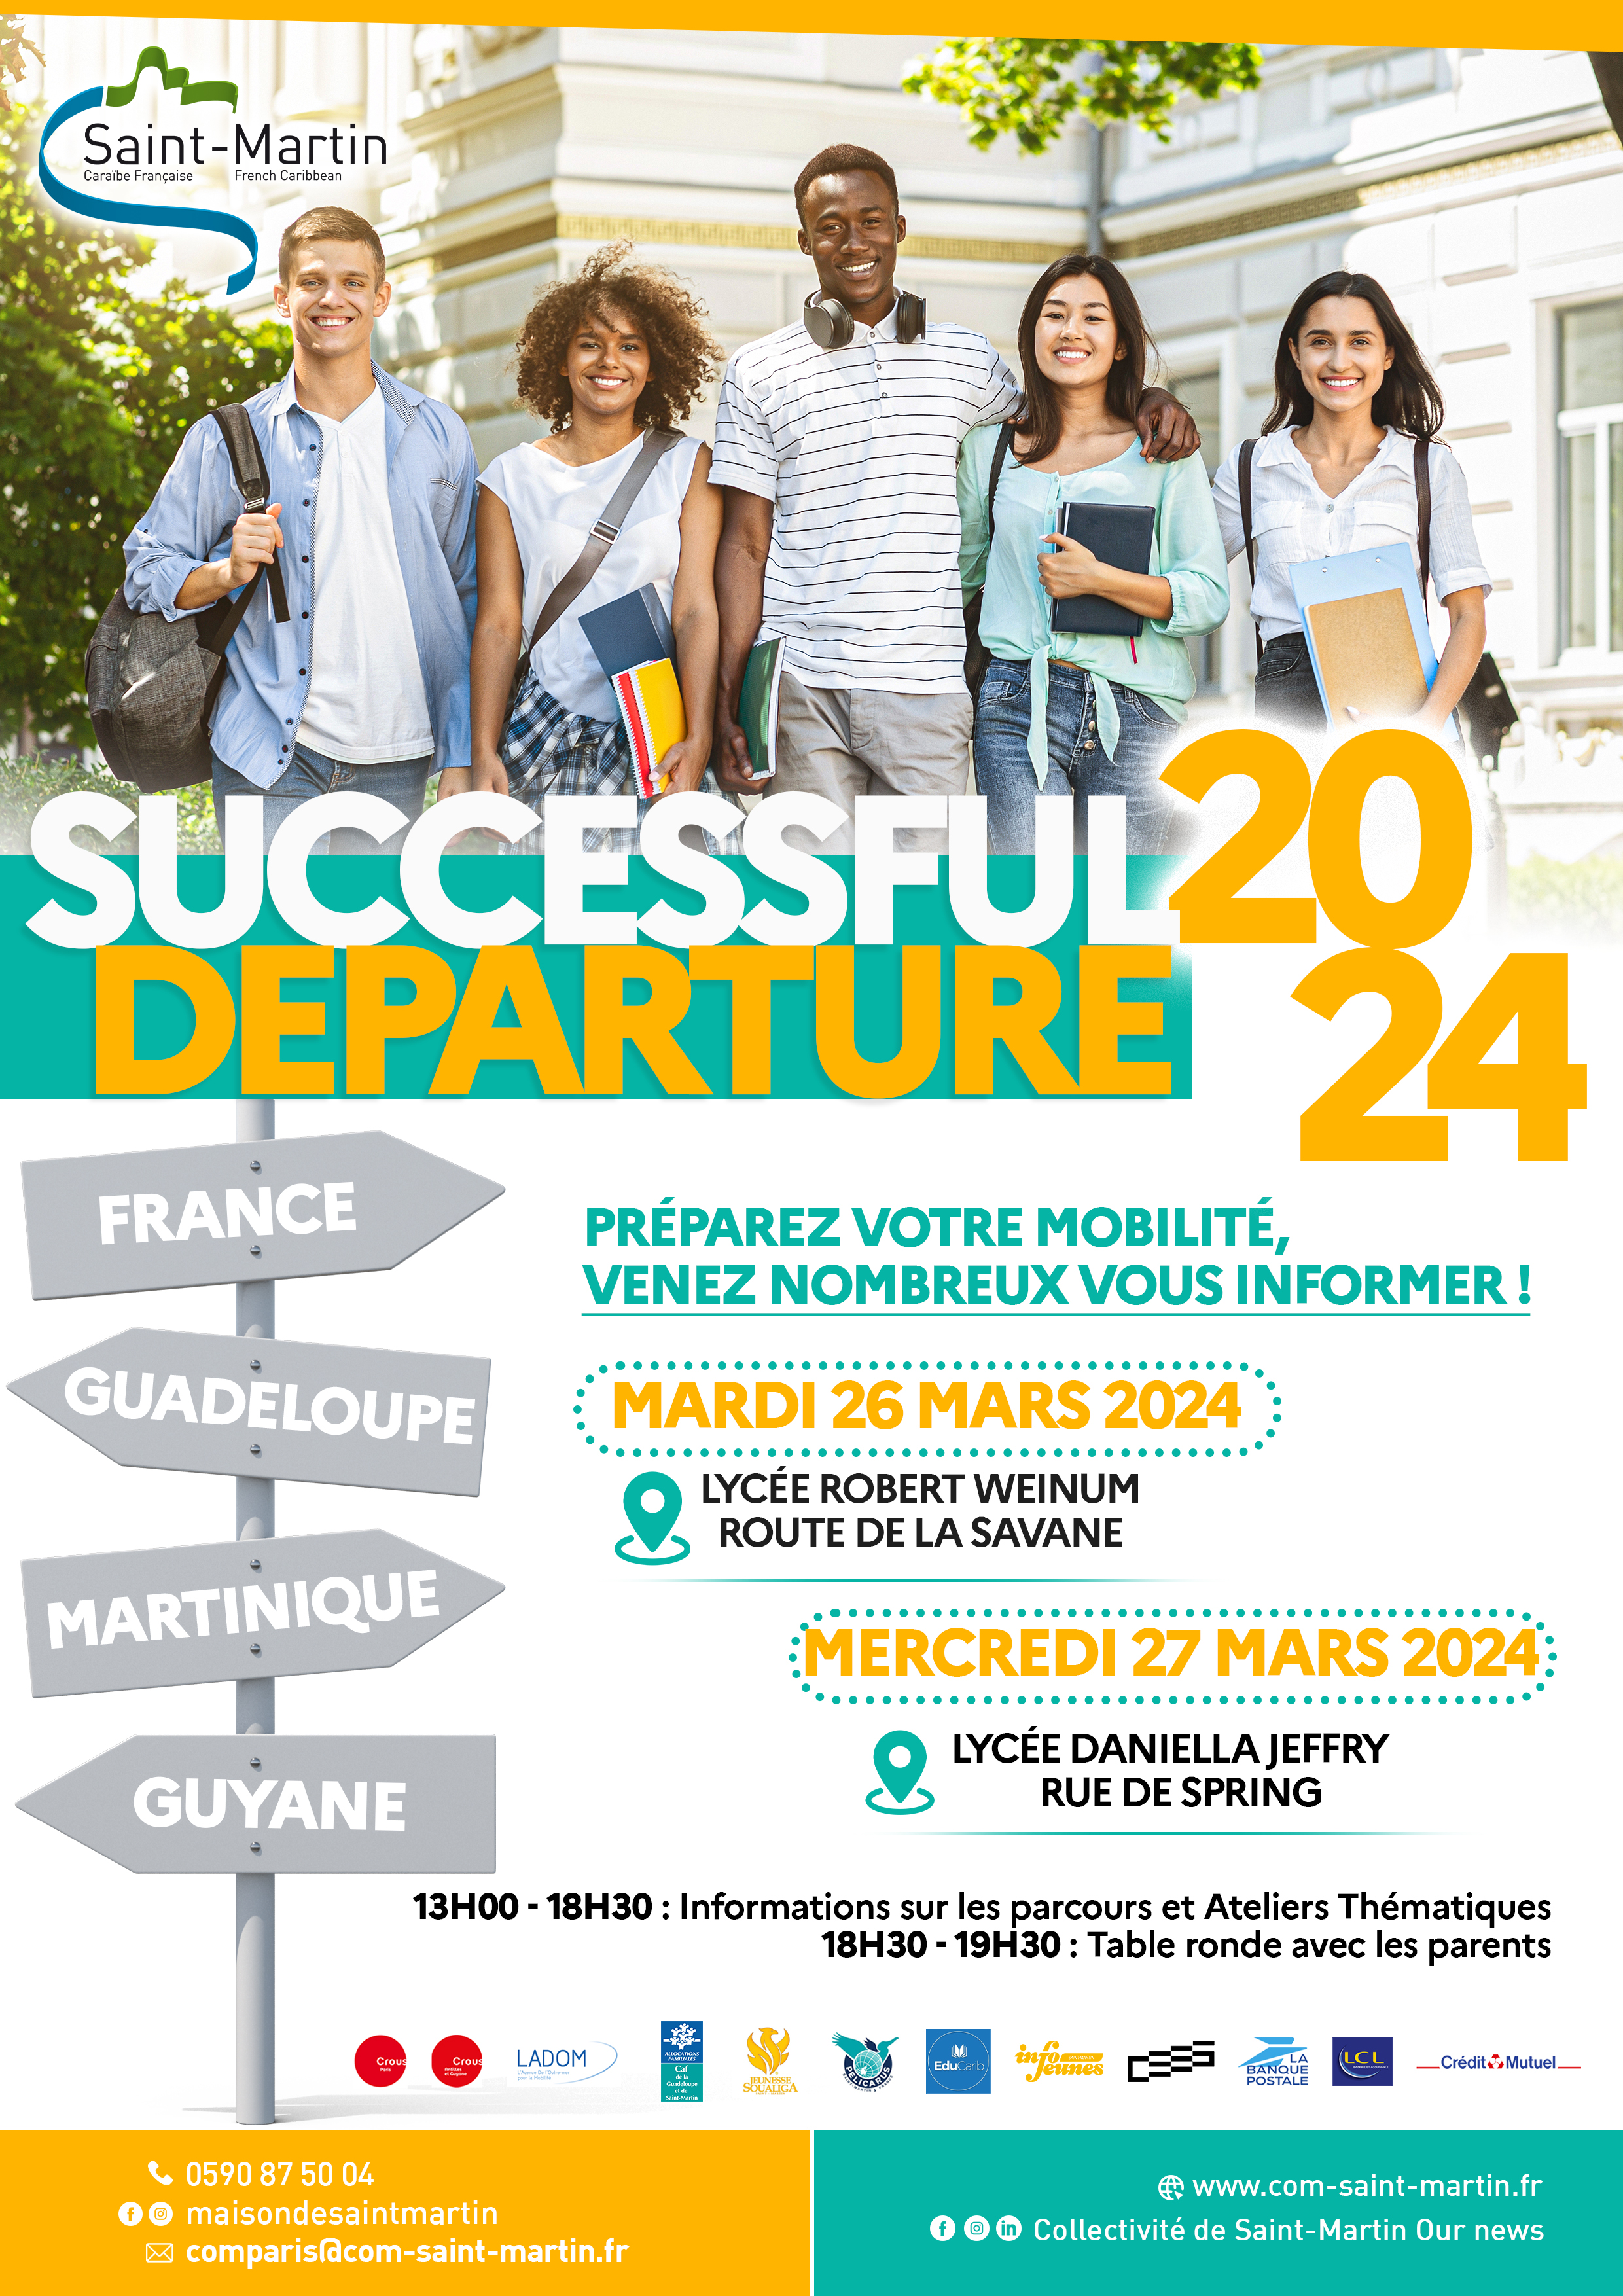 Communiqu de Presse: Successful Departure 2024